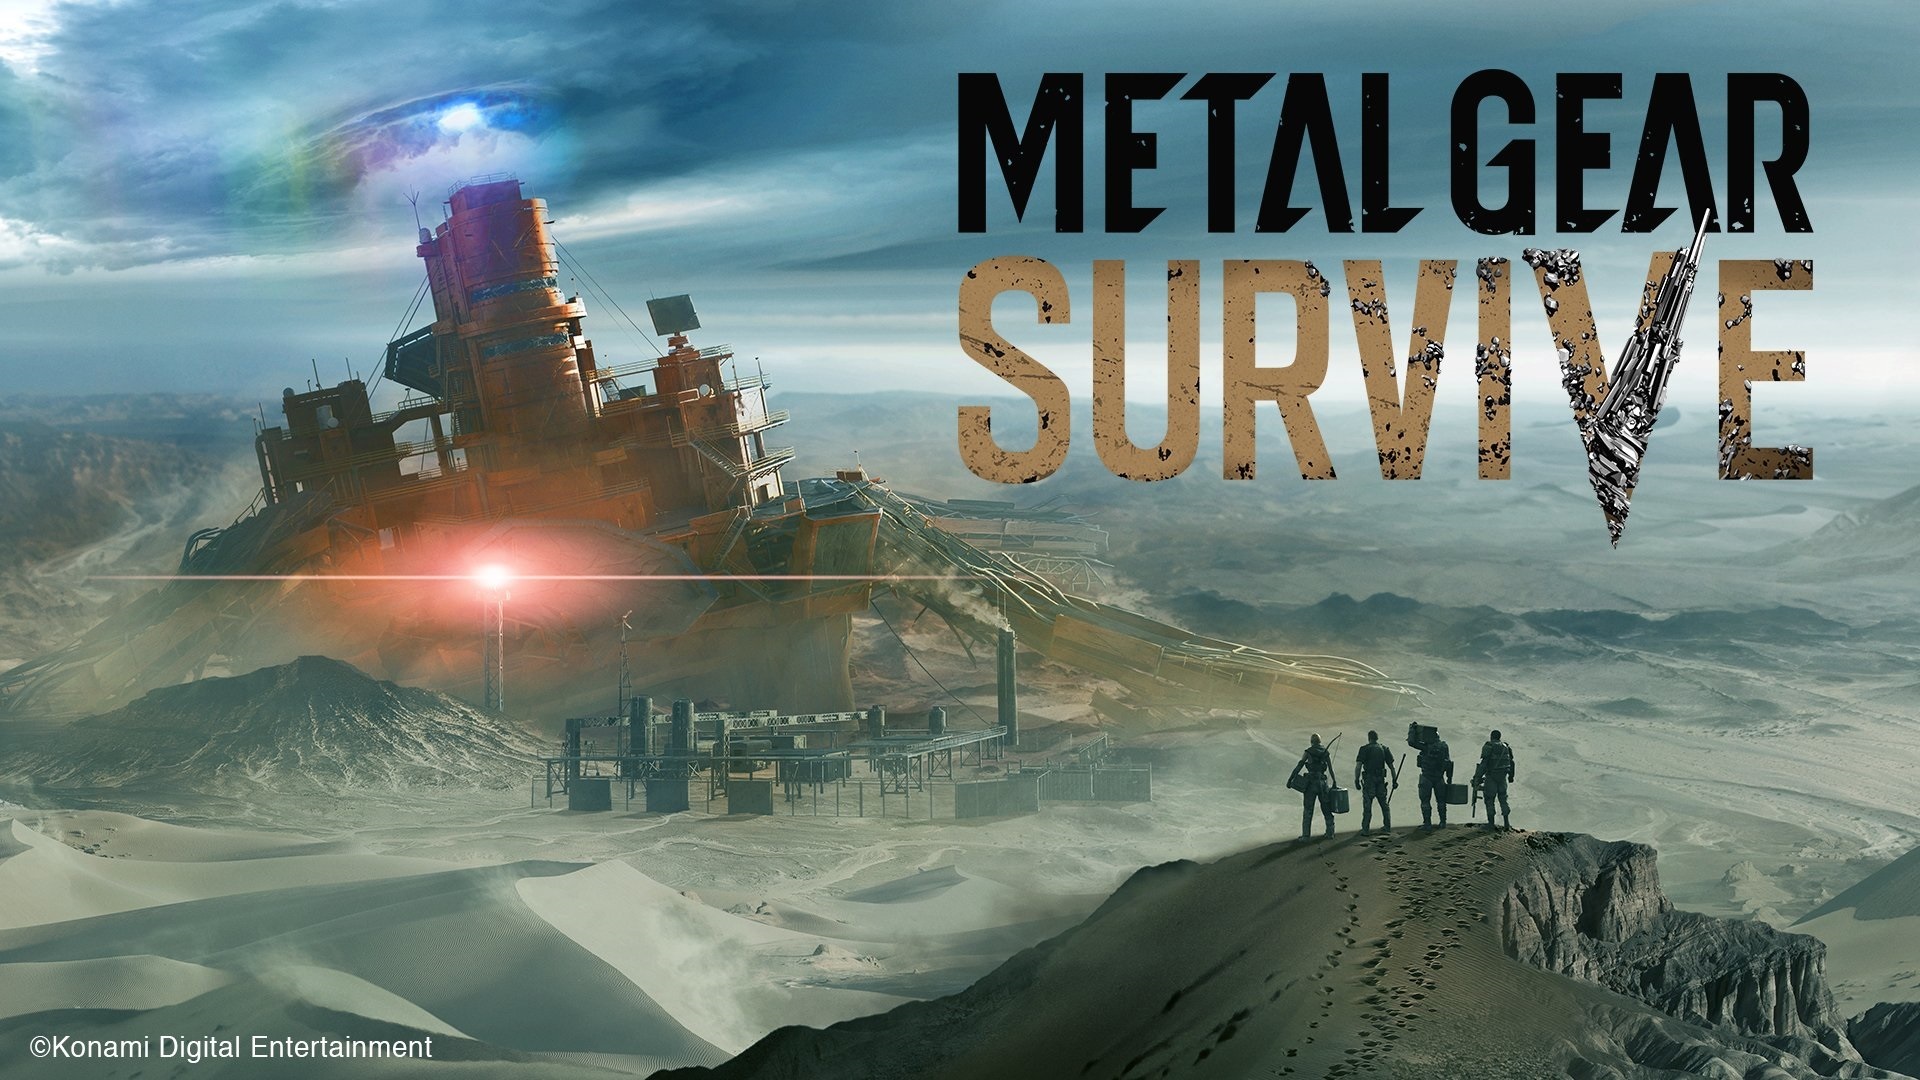 メタルギア シリーズの最新作 Metal Gear Survive の制作が決定 ゾンビのような敵と戦うpvも公開に Spice エンタメ特化型情報メディア スパイス